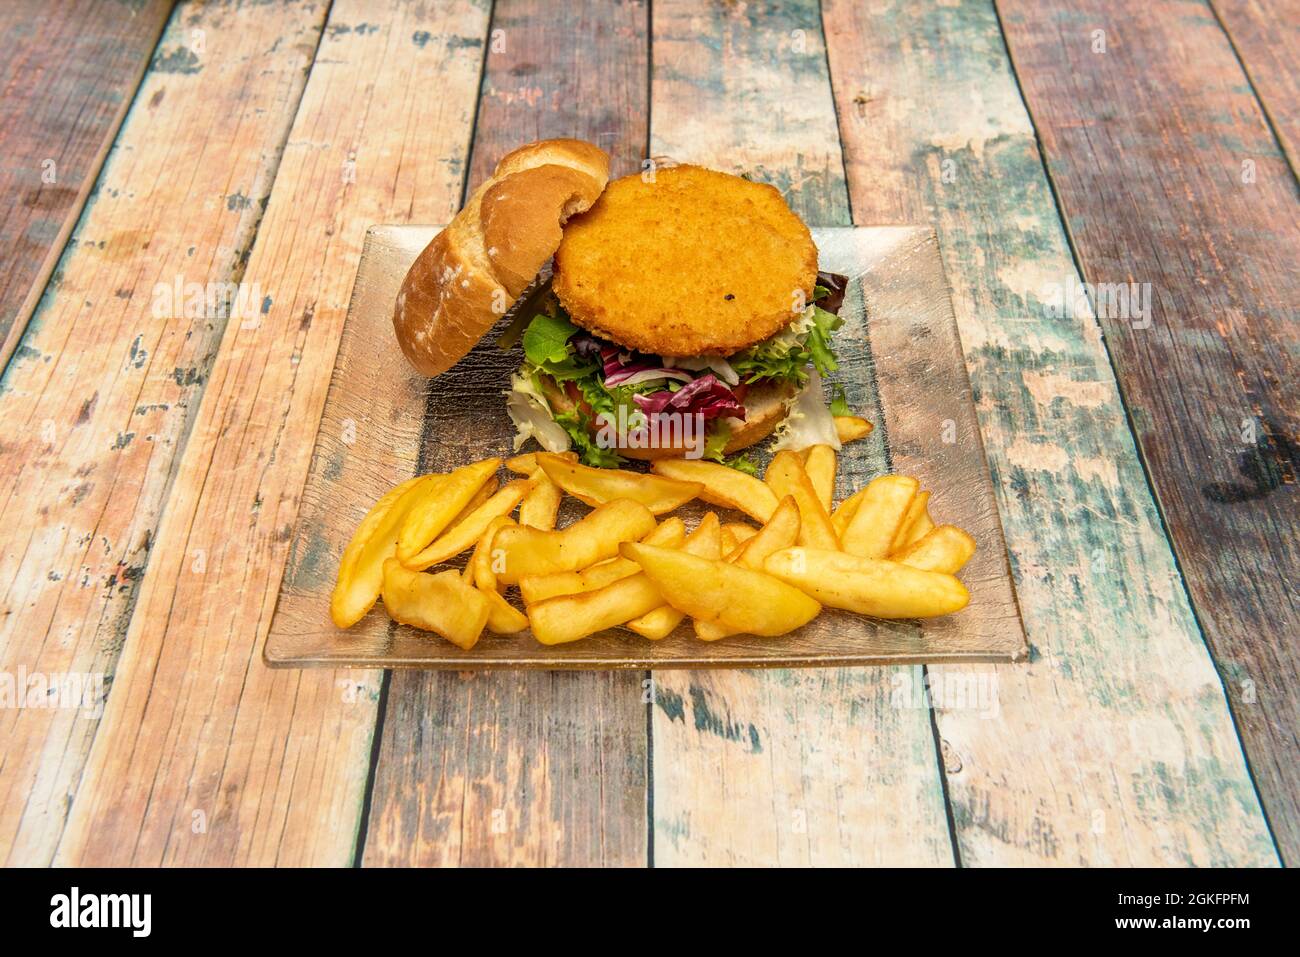 Hähnchenburger im Teig, mit viel Salat, rustikalem Brot und einer Seite Pommes Frites Stockfoto